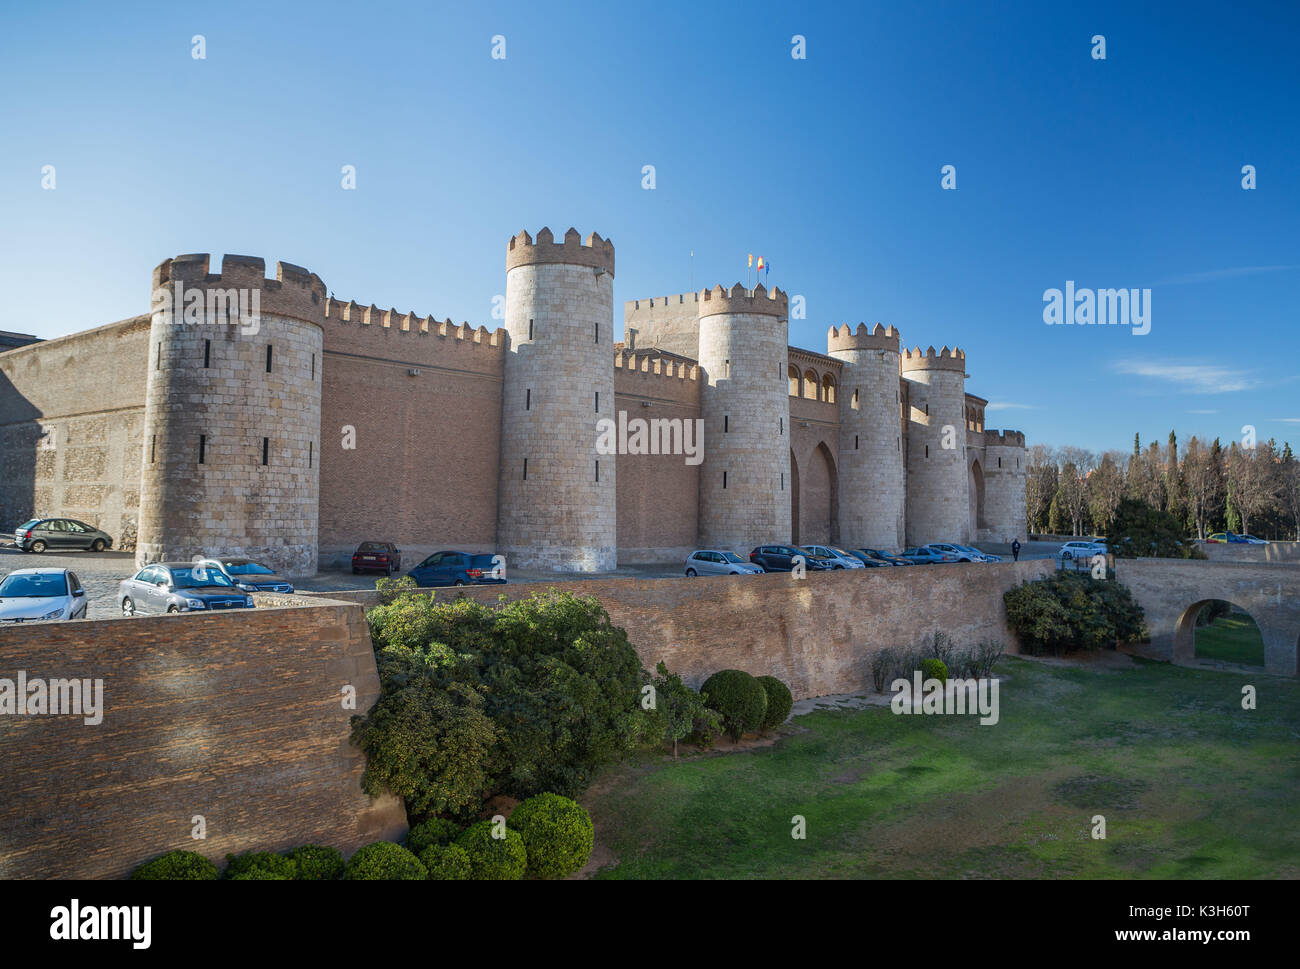 Spain, Aragon Region, Zaragoza City, Aljaferia Palace Stock Photo